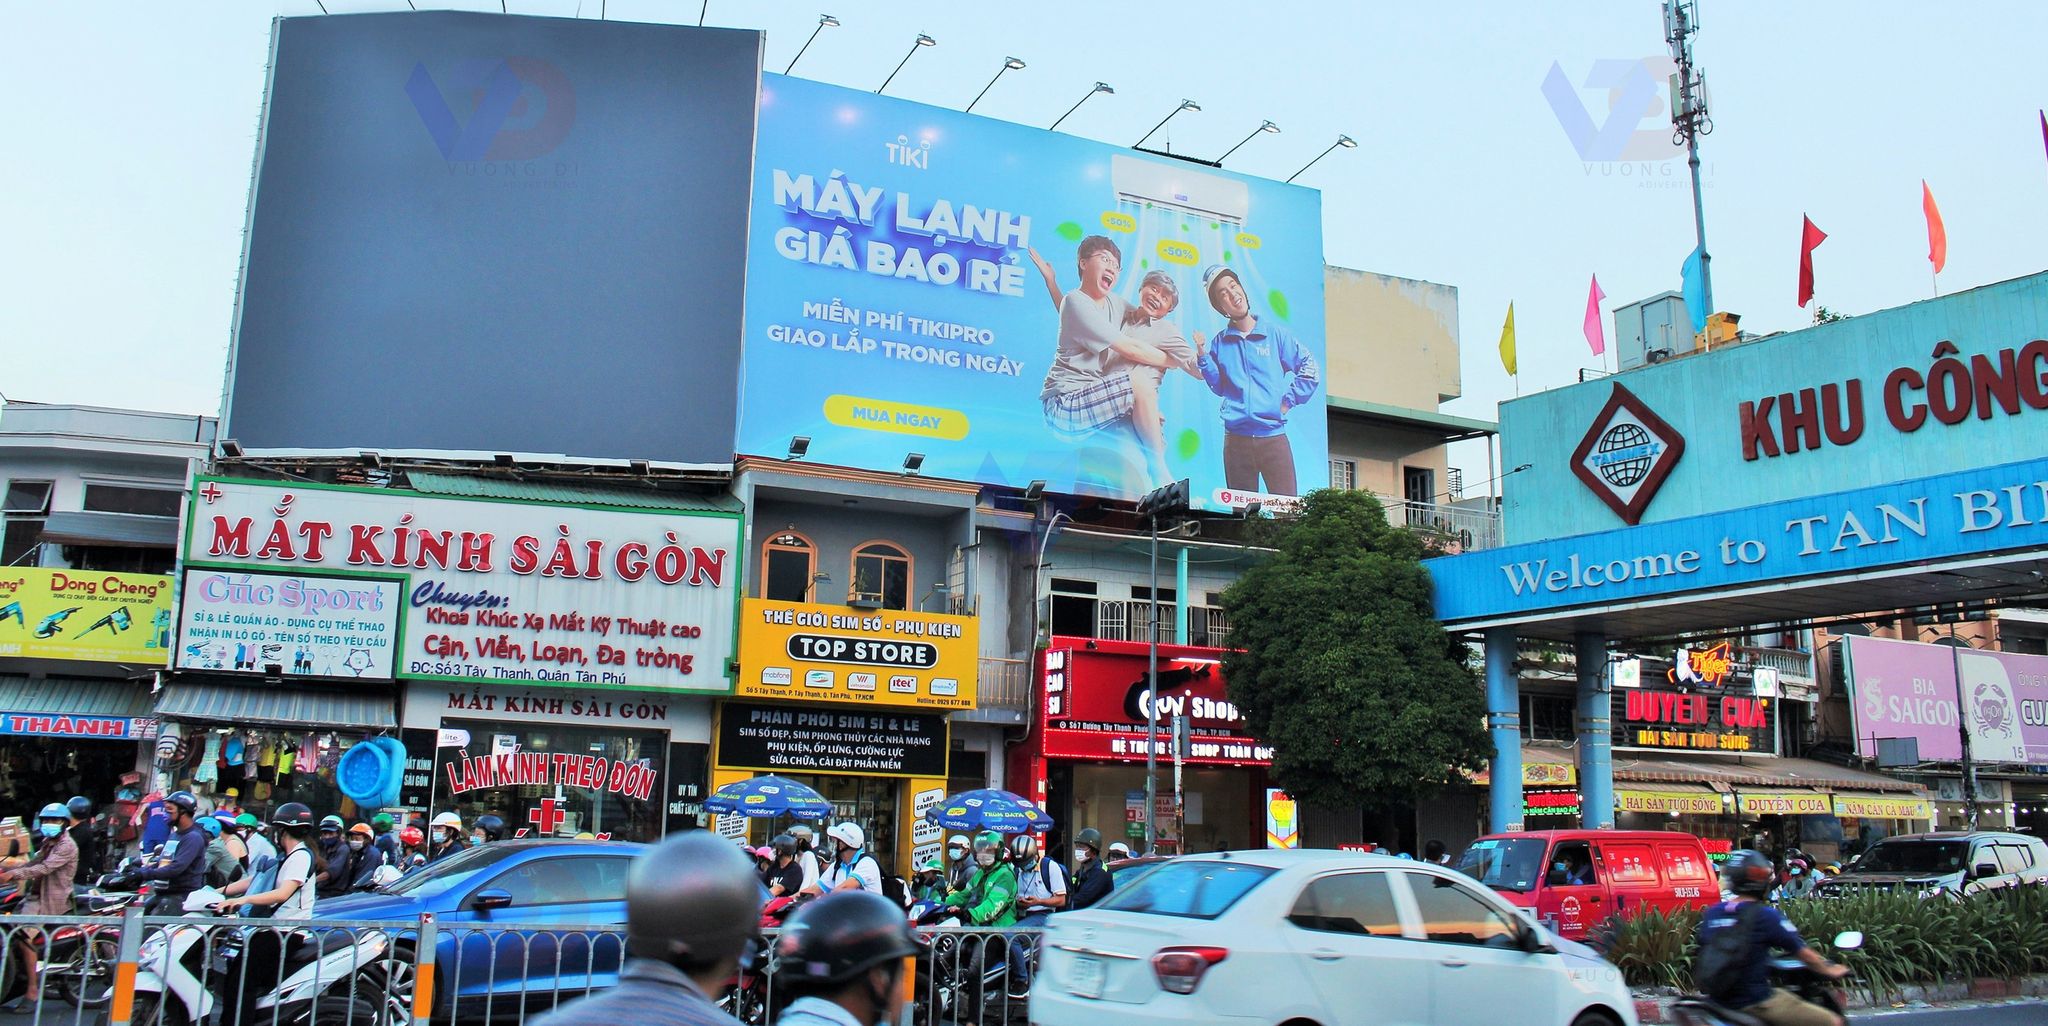 Bảng quảng cáo gần cổng Khu công nghiệp Tân Bình, TPHCM